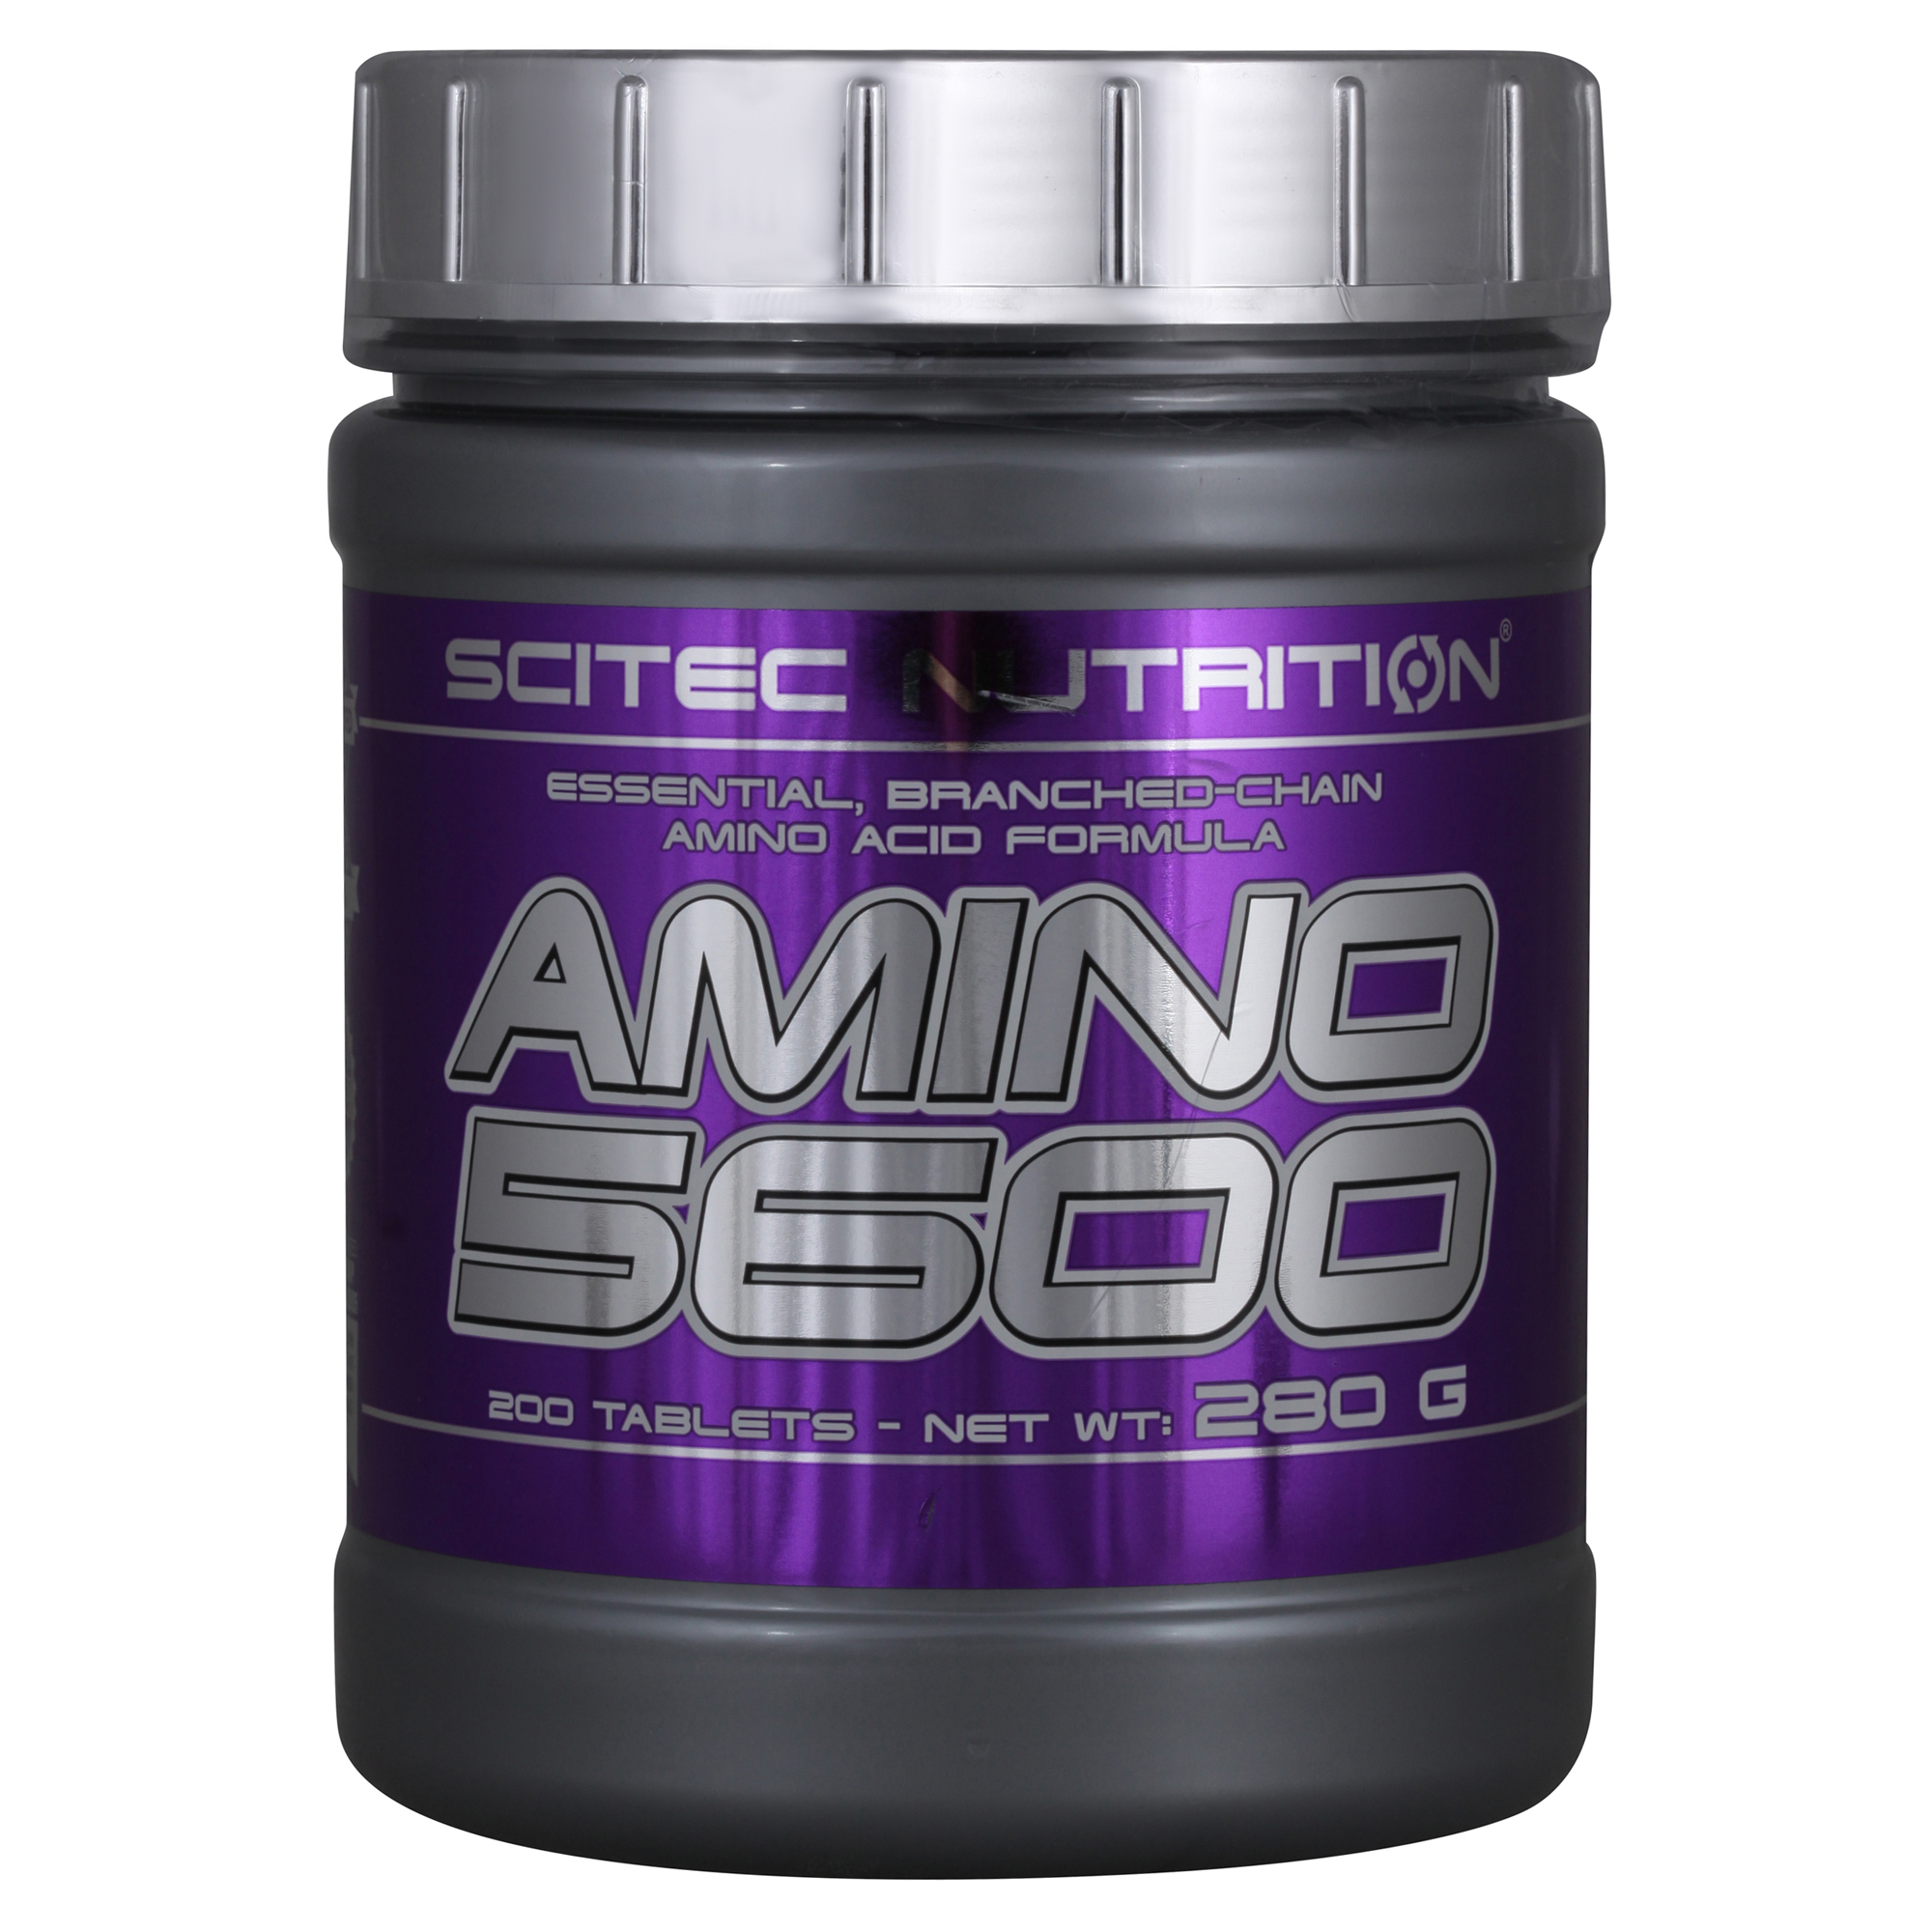 Аминокислоты nutrition. Амино 5600 Scitec Nutrition. Nutrition Amino 5600 аминокислоты Scitec Nutrition. Scitec Nutrition Amino 5600 аминокислоты 500 табл.. Scitec Amino 5600 200 таб.